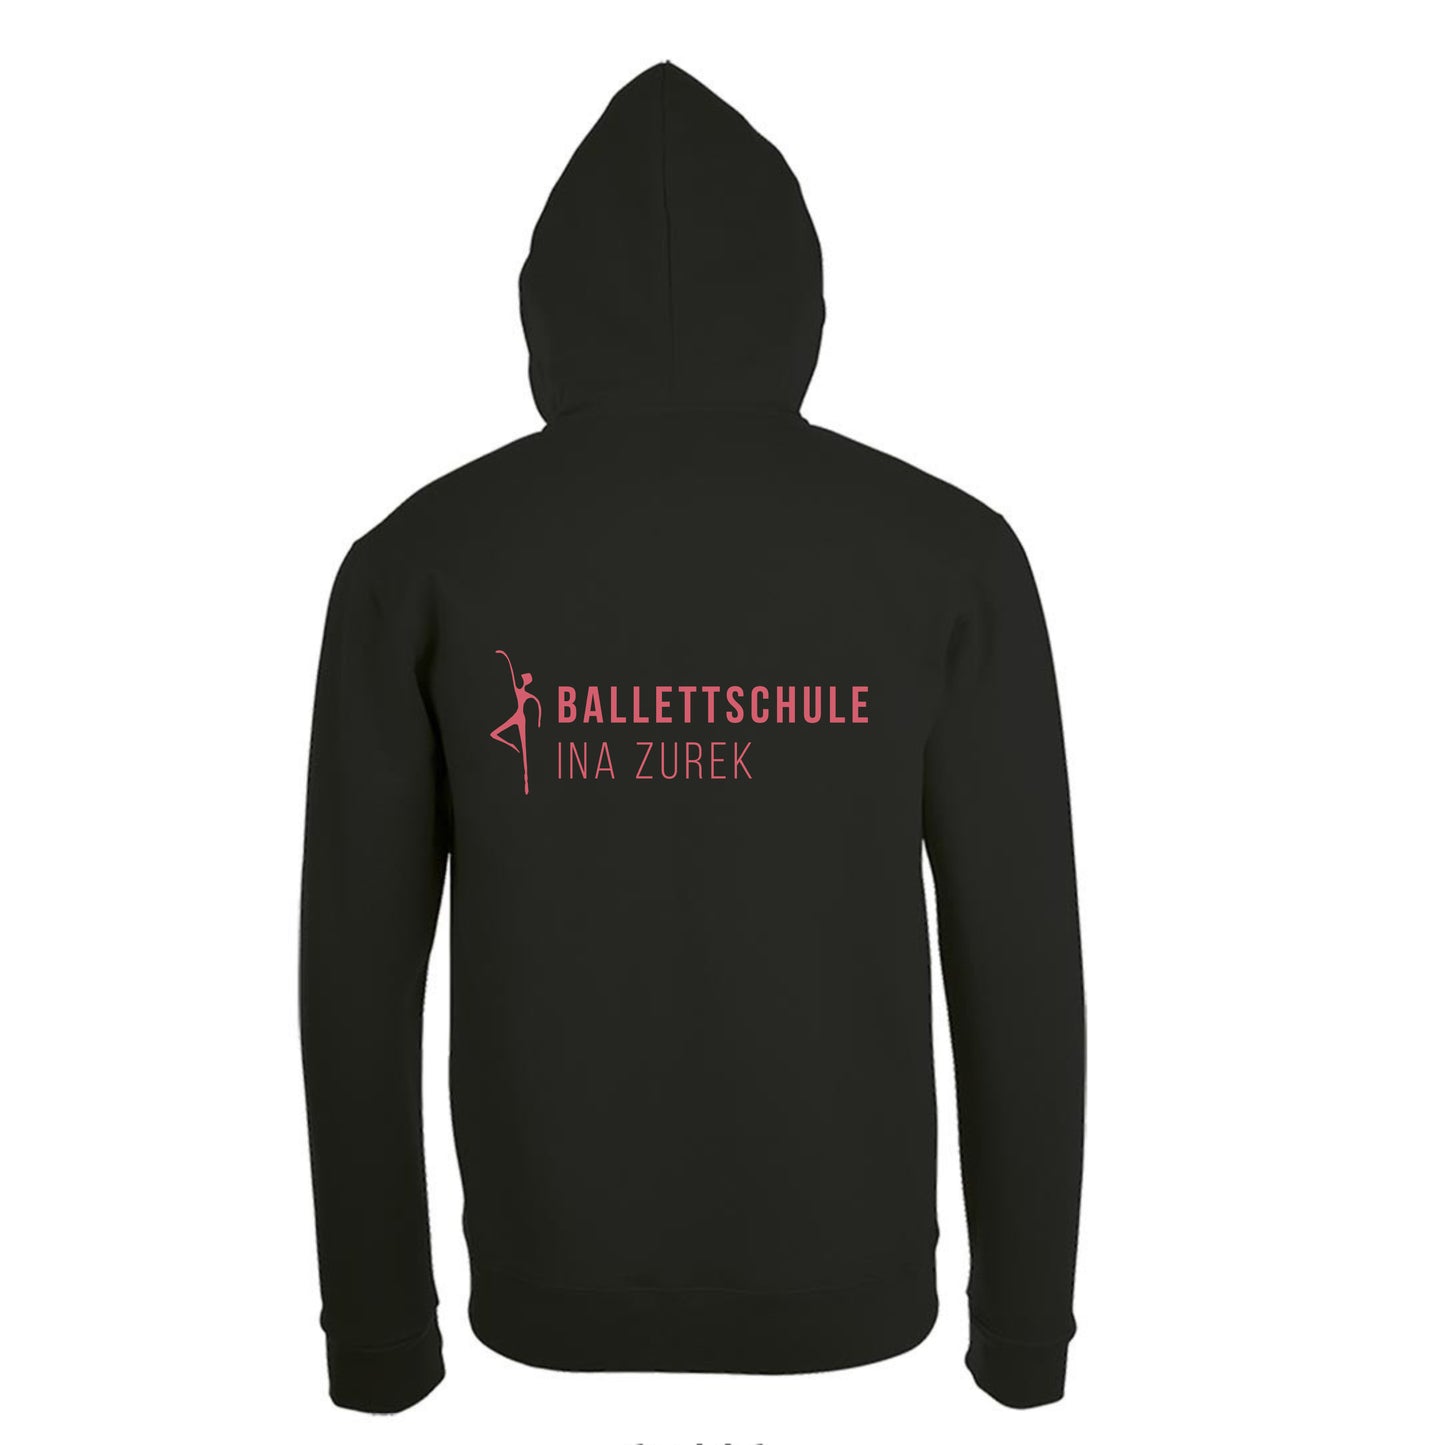 Sweatshirt-Jacke Kids "Ballettschule" schwarz mit rosanem Druck